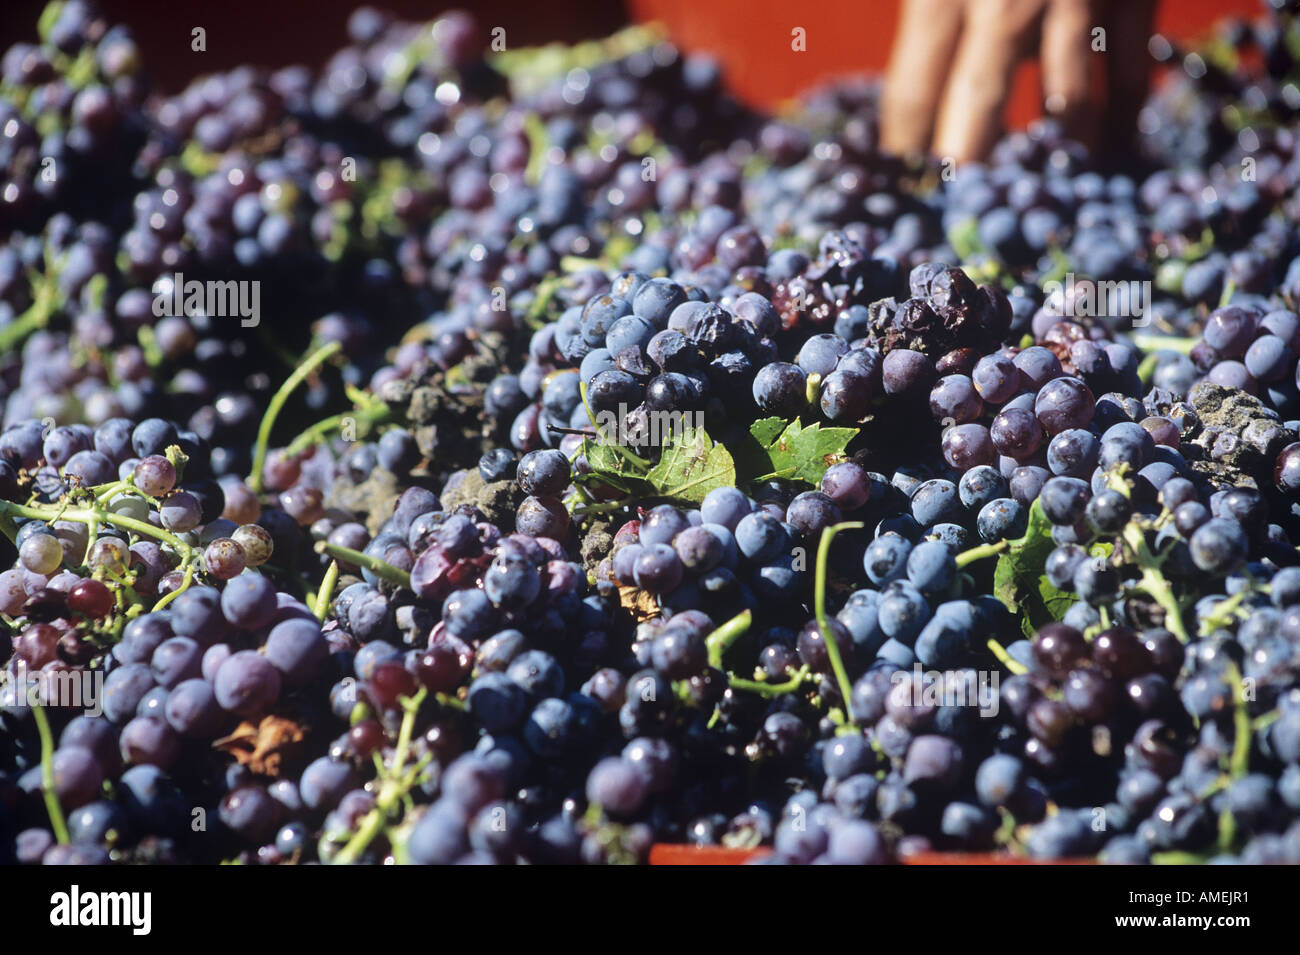 Dettaglio di un mucchio di frutti maturi appena raccolto durante la vendemmia in uno dei vigneti che producono il Cote du Rhone vini in Provenza Foto Stock